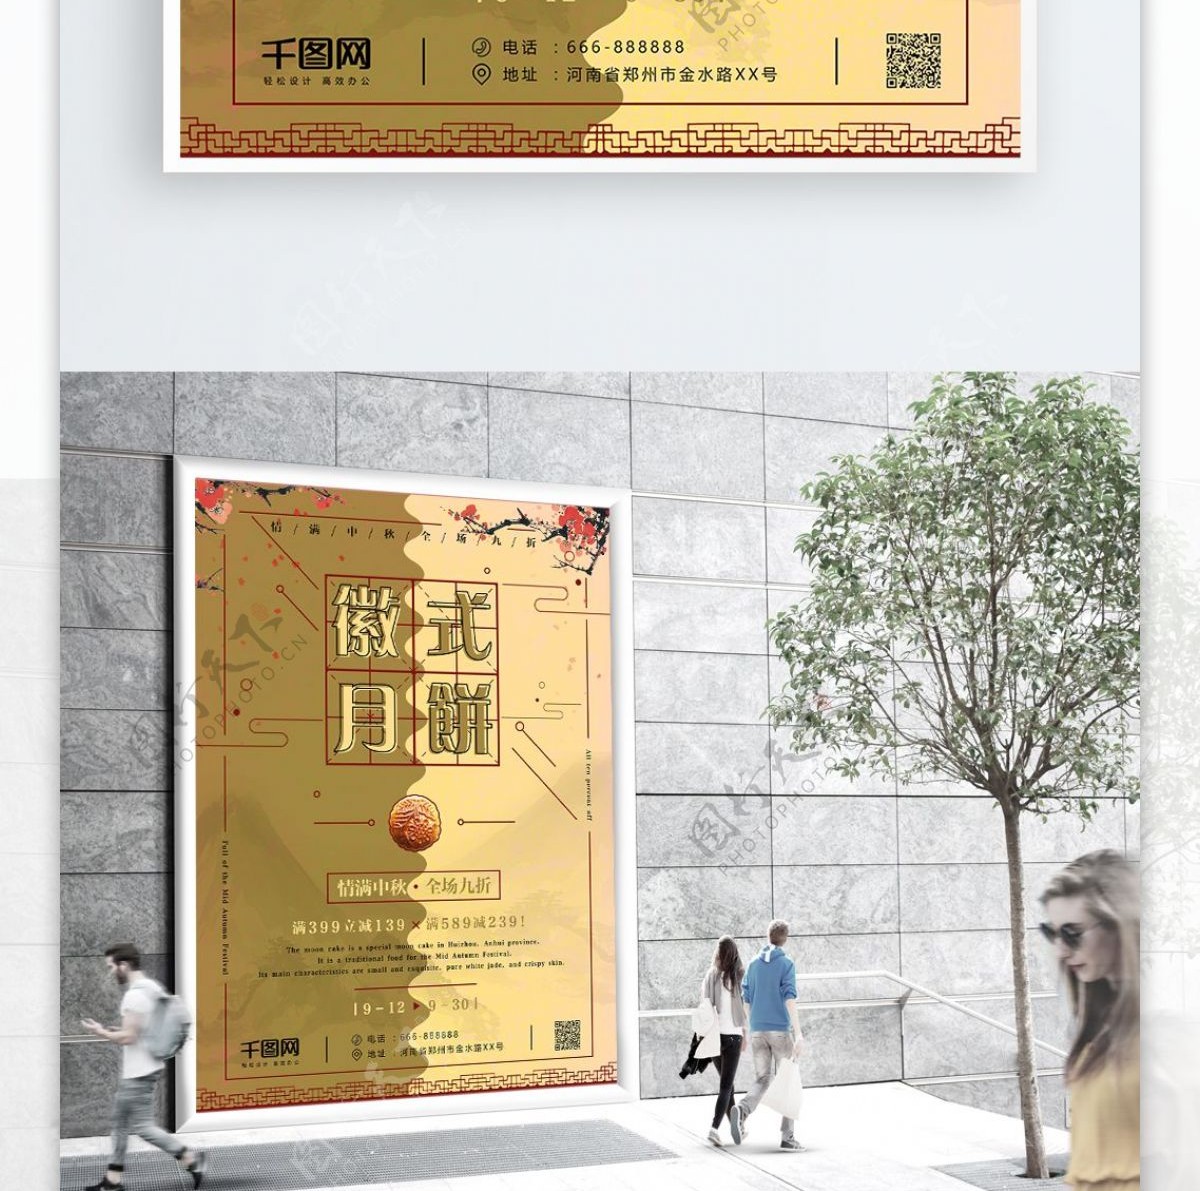 创意中国风徽式月饼促销海报